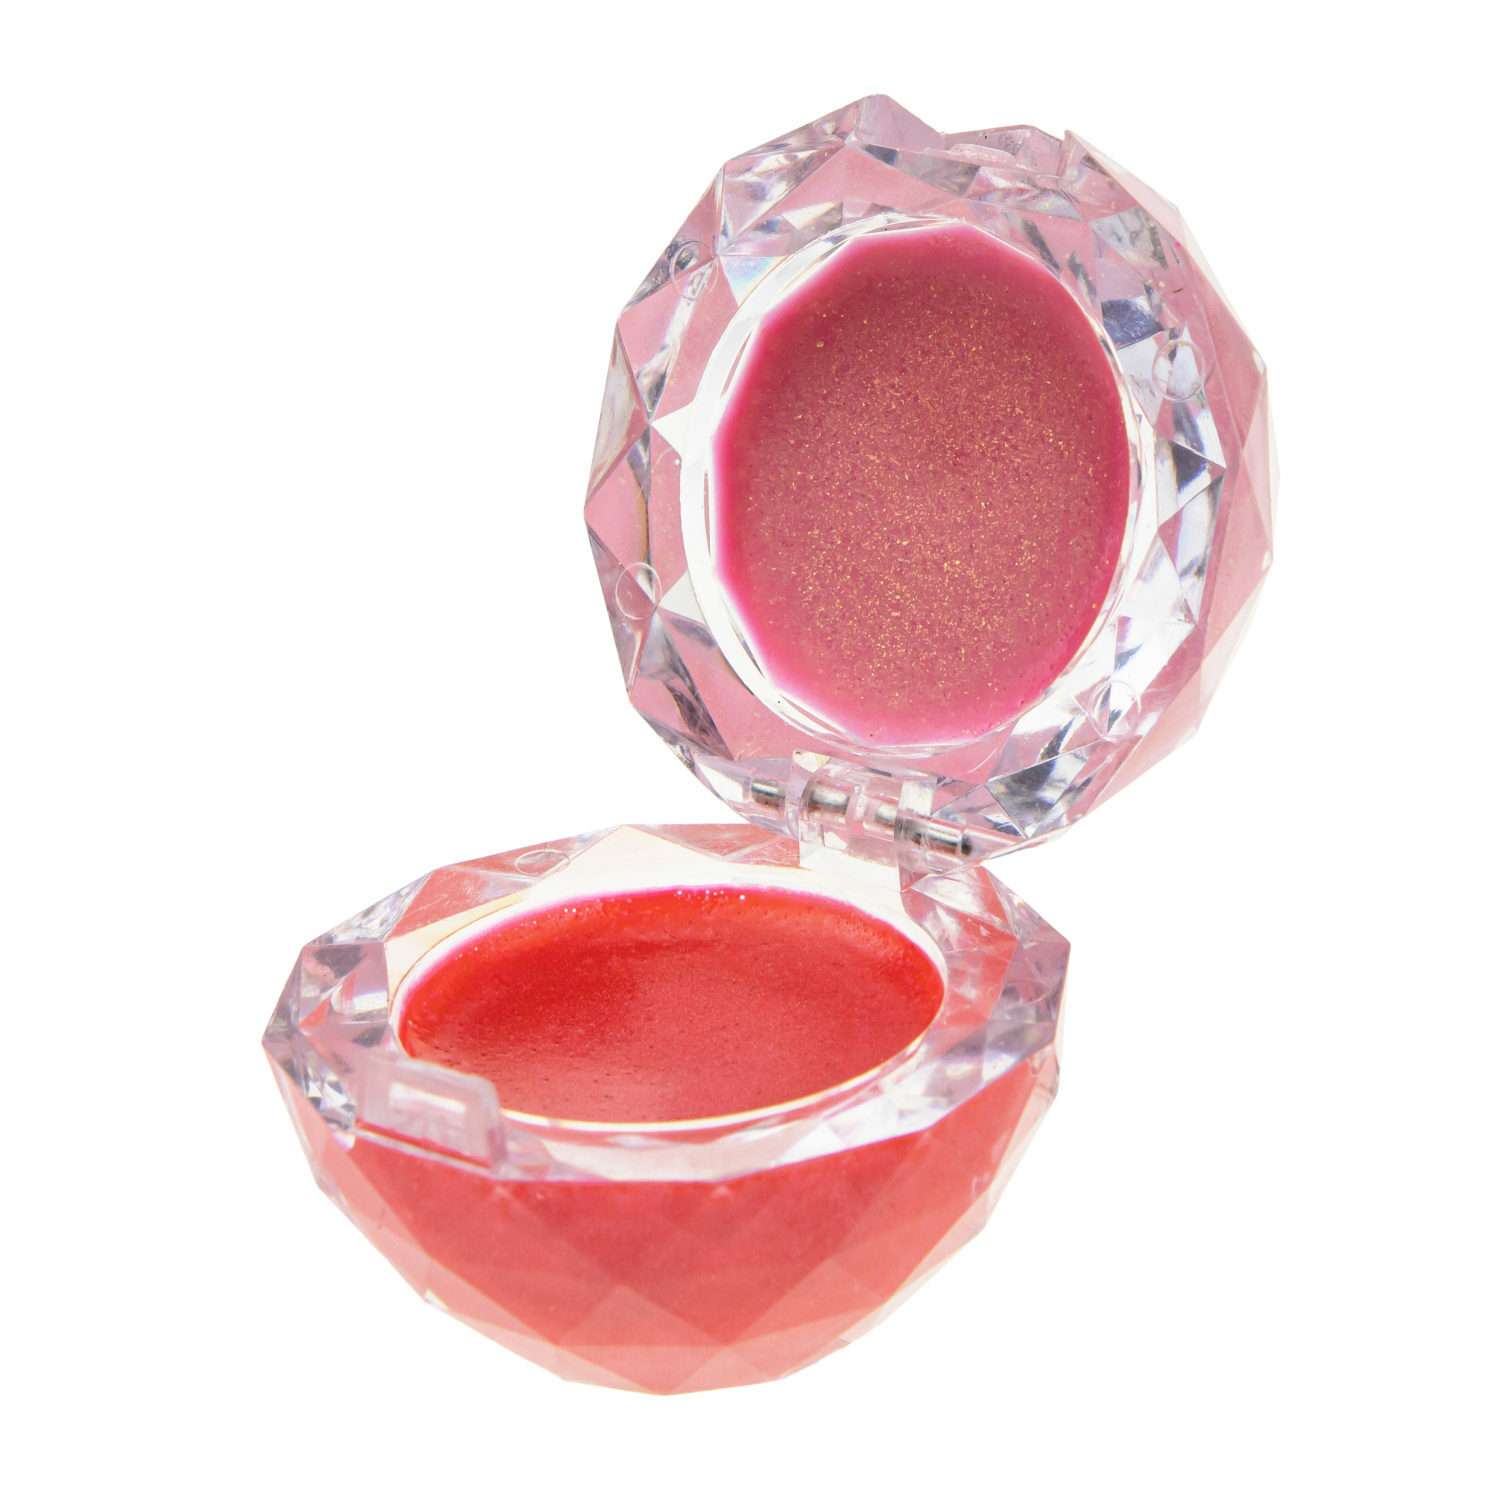 Блеск для губ Lukky Даймонд 2 в 1 цвет конфетно-розовый и бледно-розовый - фото 1